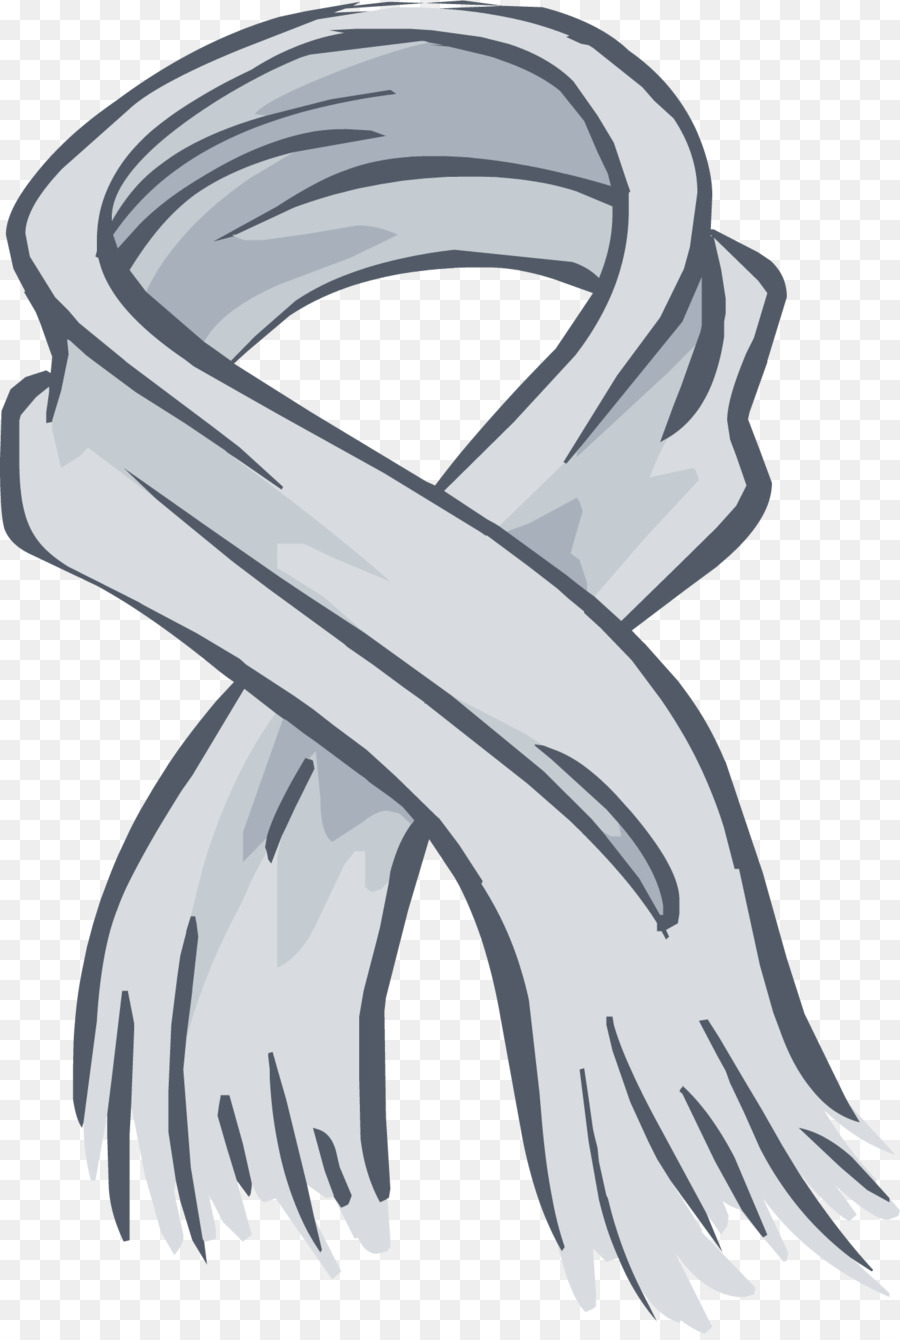 Club Penguin-Schal-Clip art - Schal